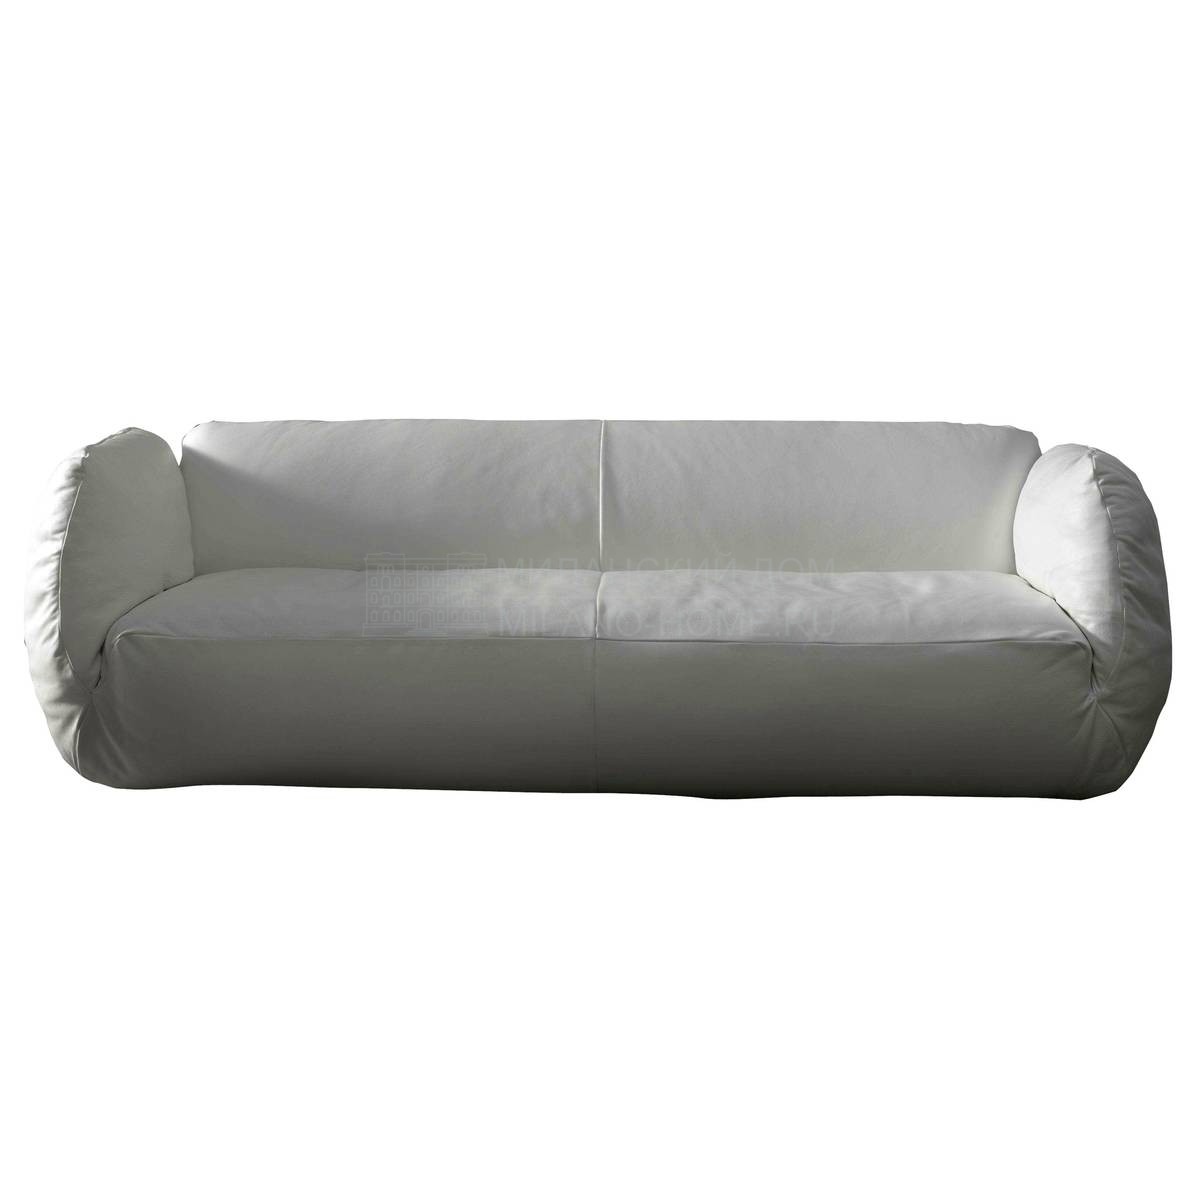 Прямой диван Pluff sofa из Италии фабрики DOMODINAMICA